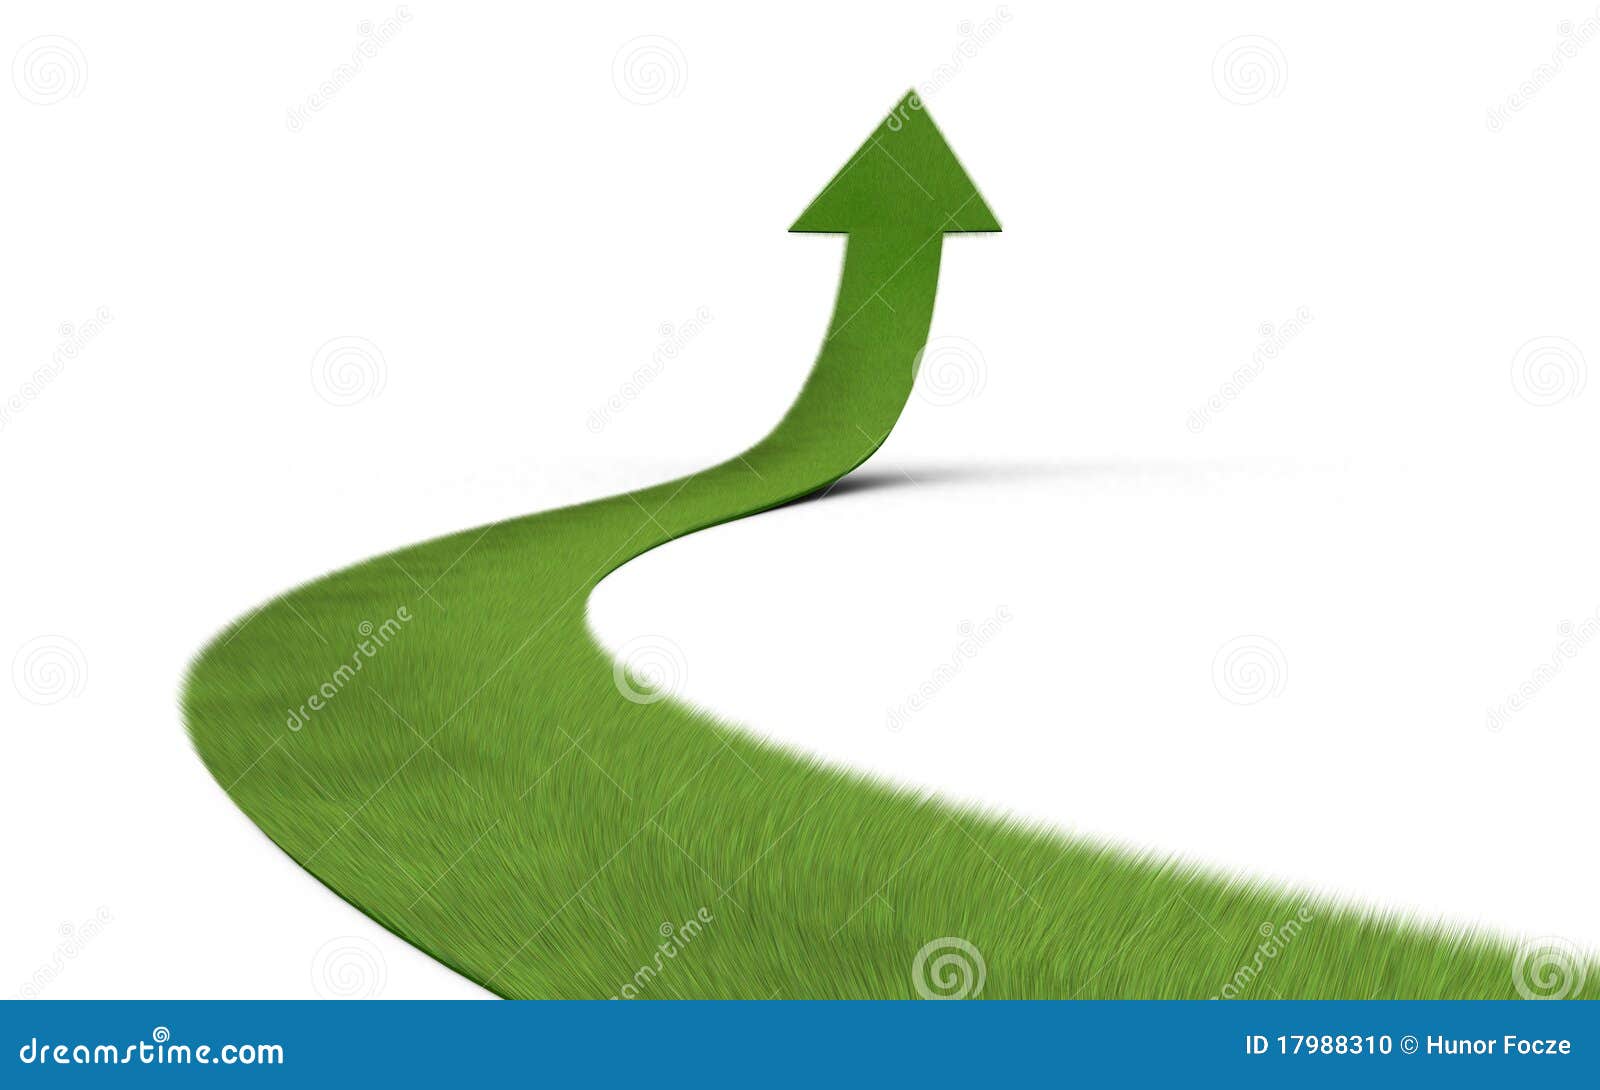 3d rindió imagen de una flecha ascendente de la hierba aislada sobre el fondo blanco. Representa concepto del crecimiento.